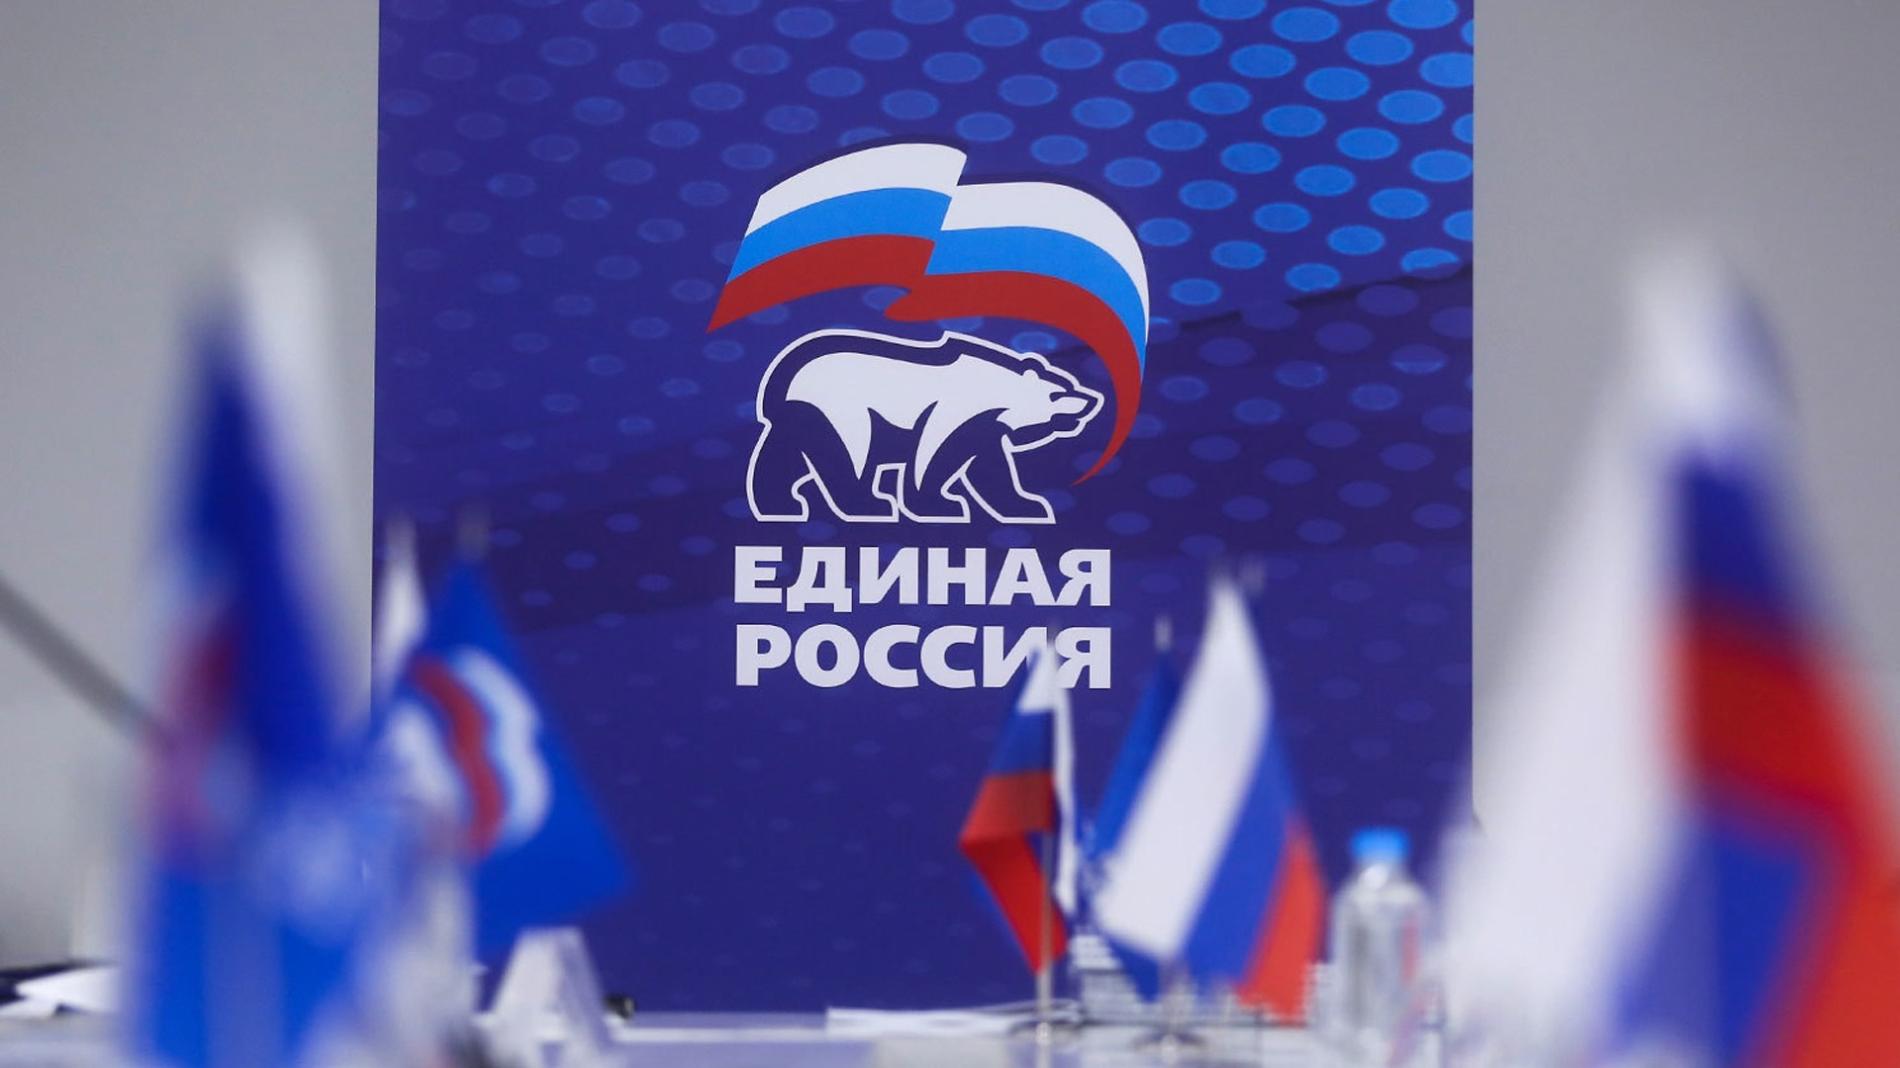 «Единая Россия» начала праймериз для отбора кандидатов на сентябрьские региональные выборы